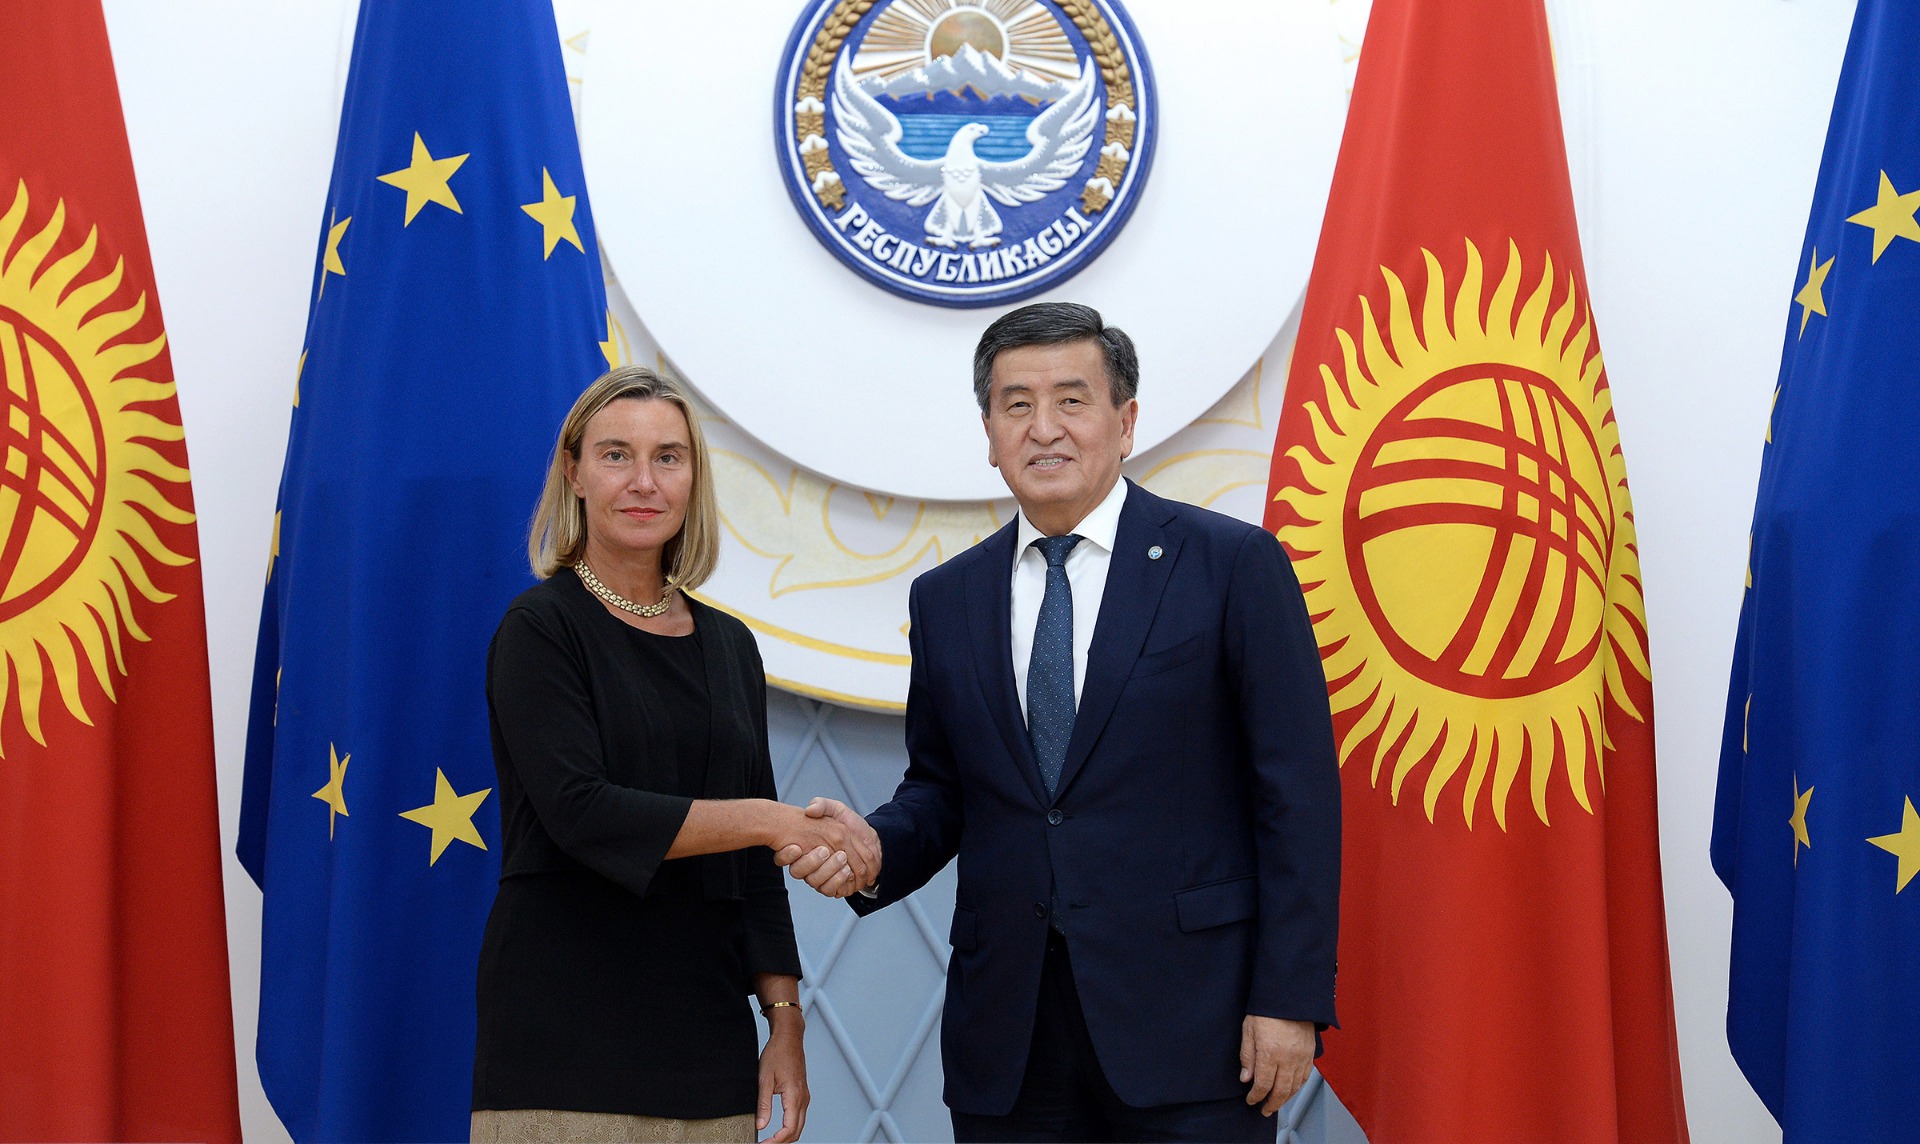 Федерика Могерини в Кыргызстане. Встреча с президентом и орден от МИДа